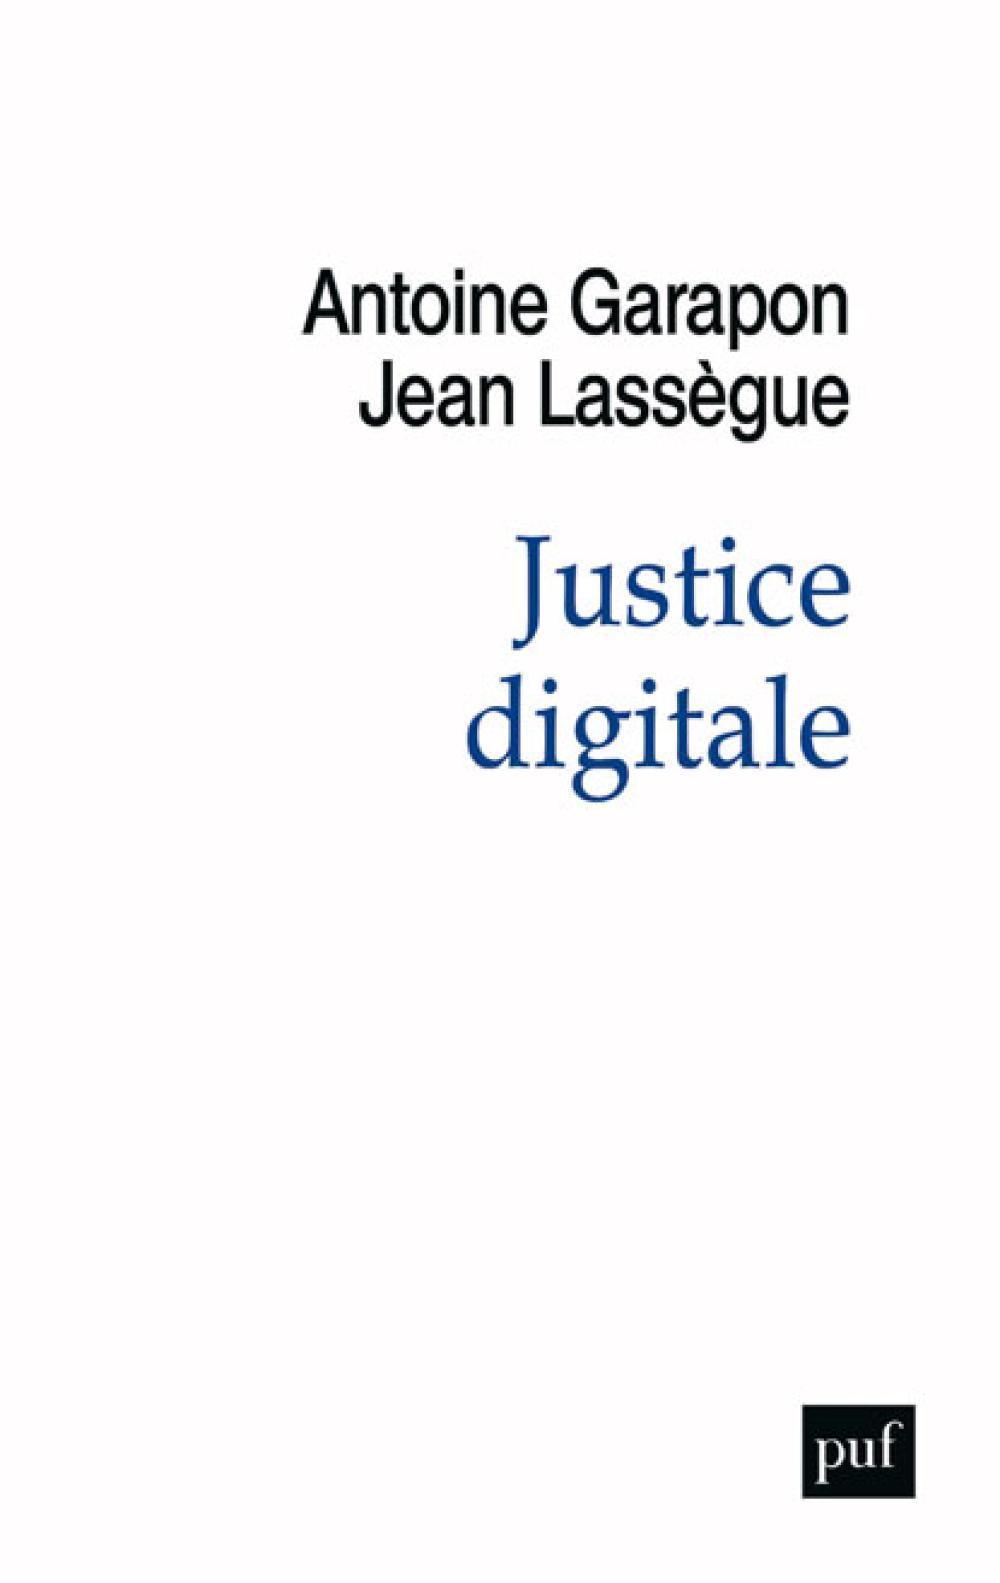 Le numérique va-t-il entraver la justice ? 